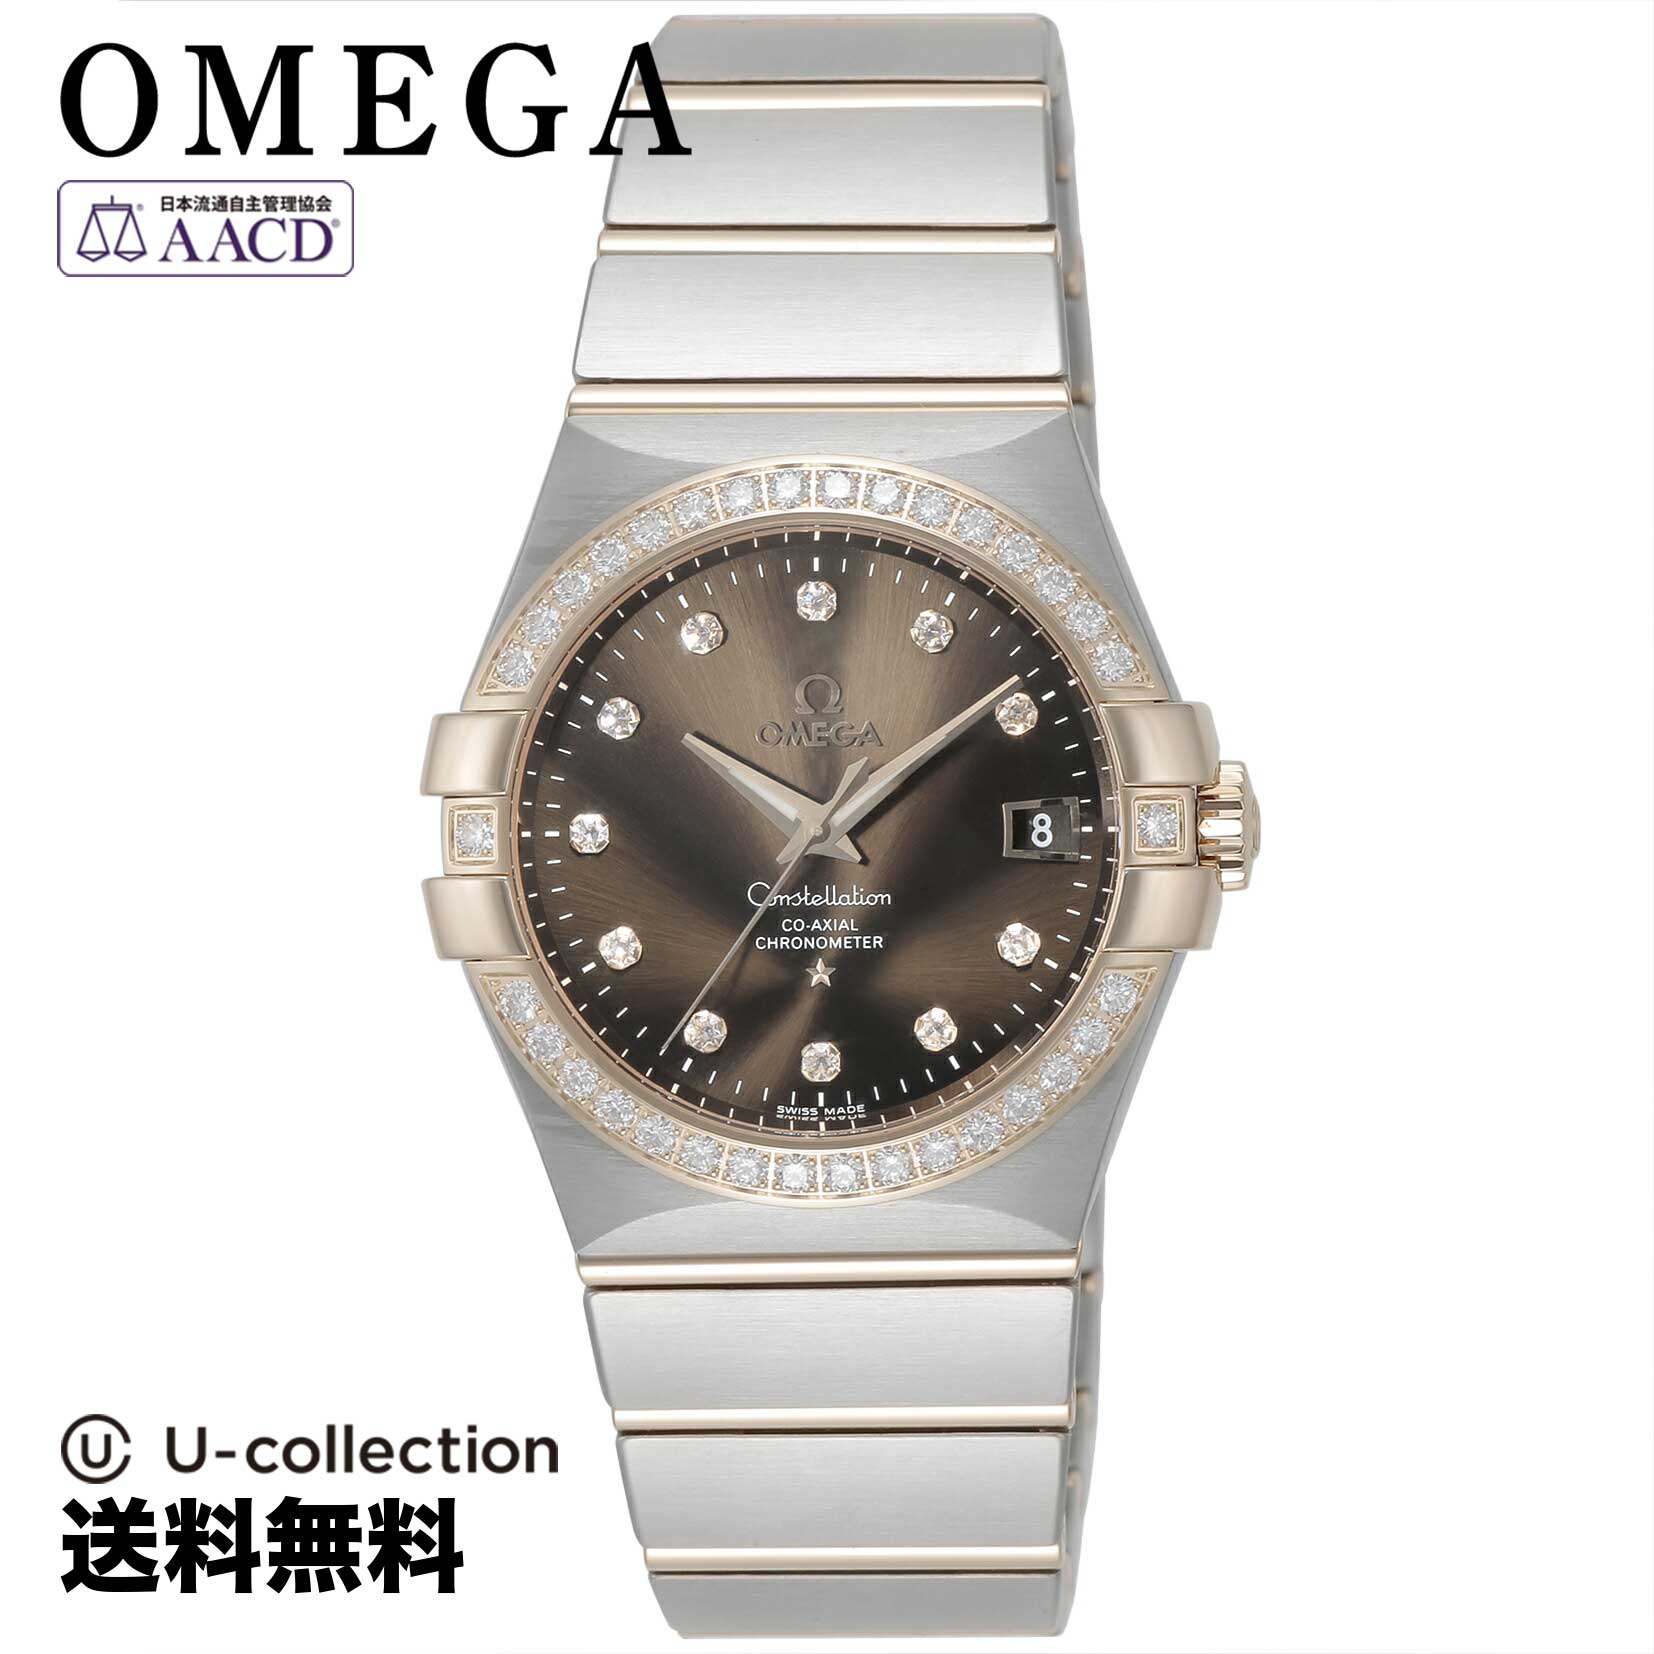 オメガ【腕時計】 OMEGA(オメガ) Constellation / コンステレーション メンズ ブラウン コーアクシャル自動巻 123.25.35.20.63.001 時計 ブランド